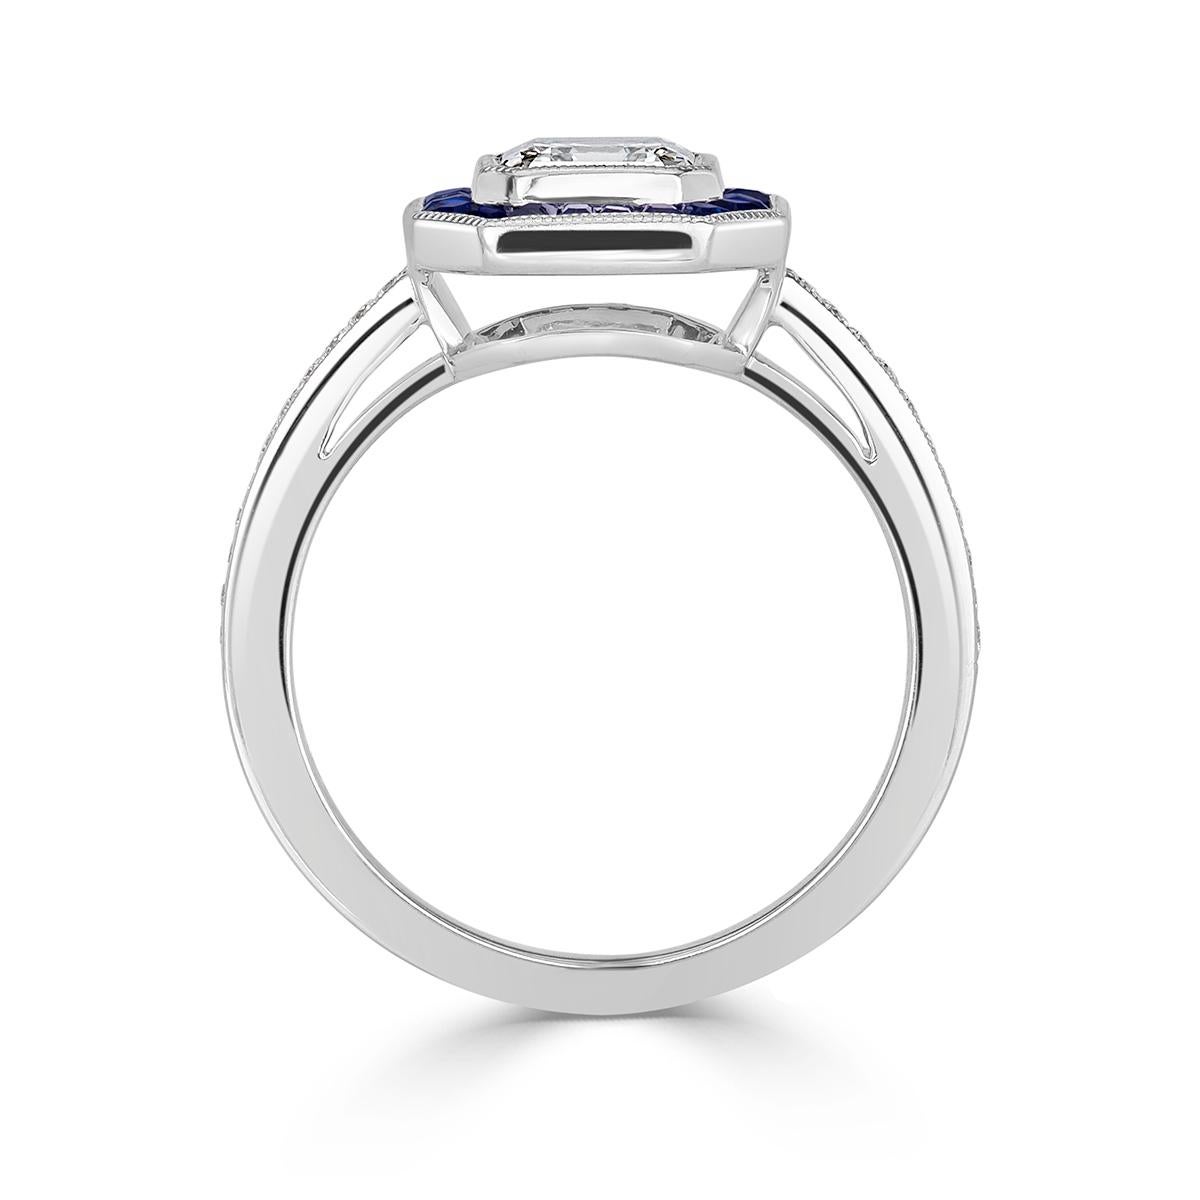 Women's or Men's Mark Broumand 1.62 Carat Asscher Cut Diamond and Sapphire Engagement Ring